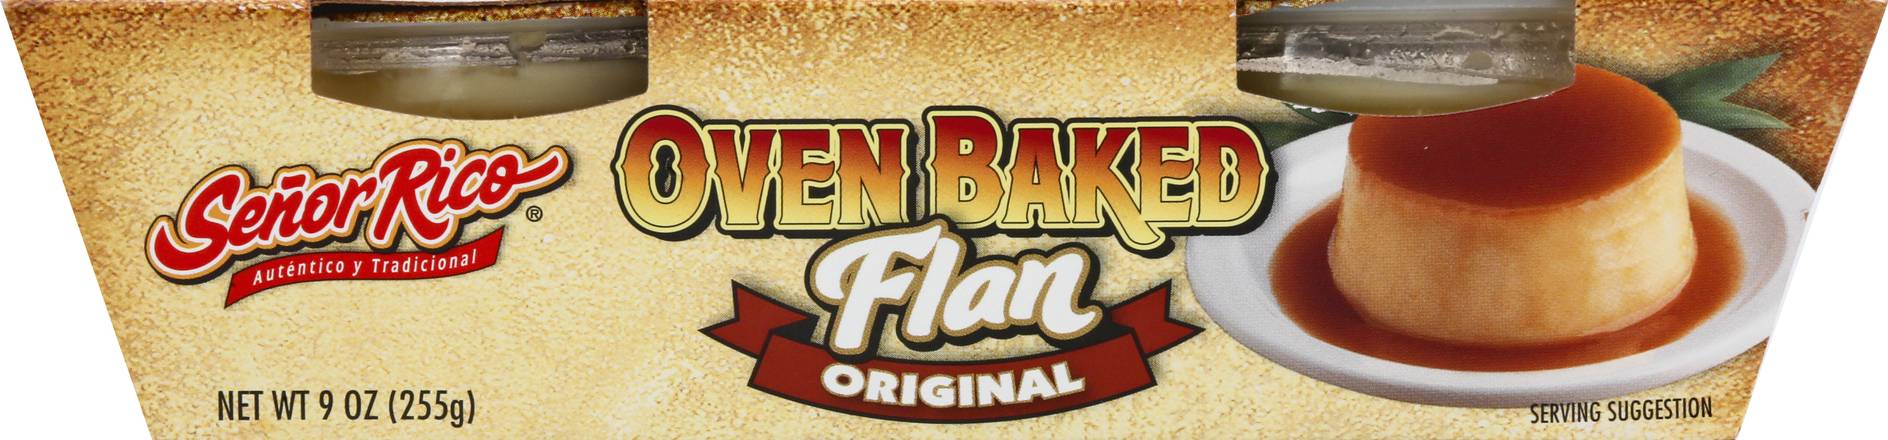 Senor Rico Oven Baked Original Flan (9 oz)